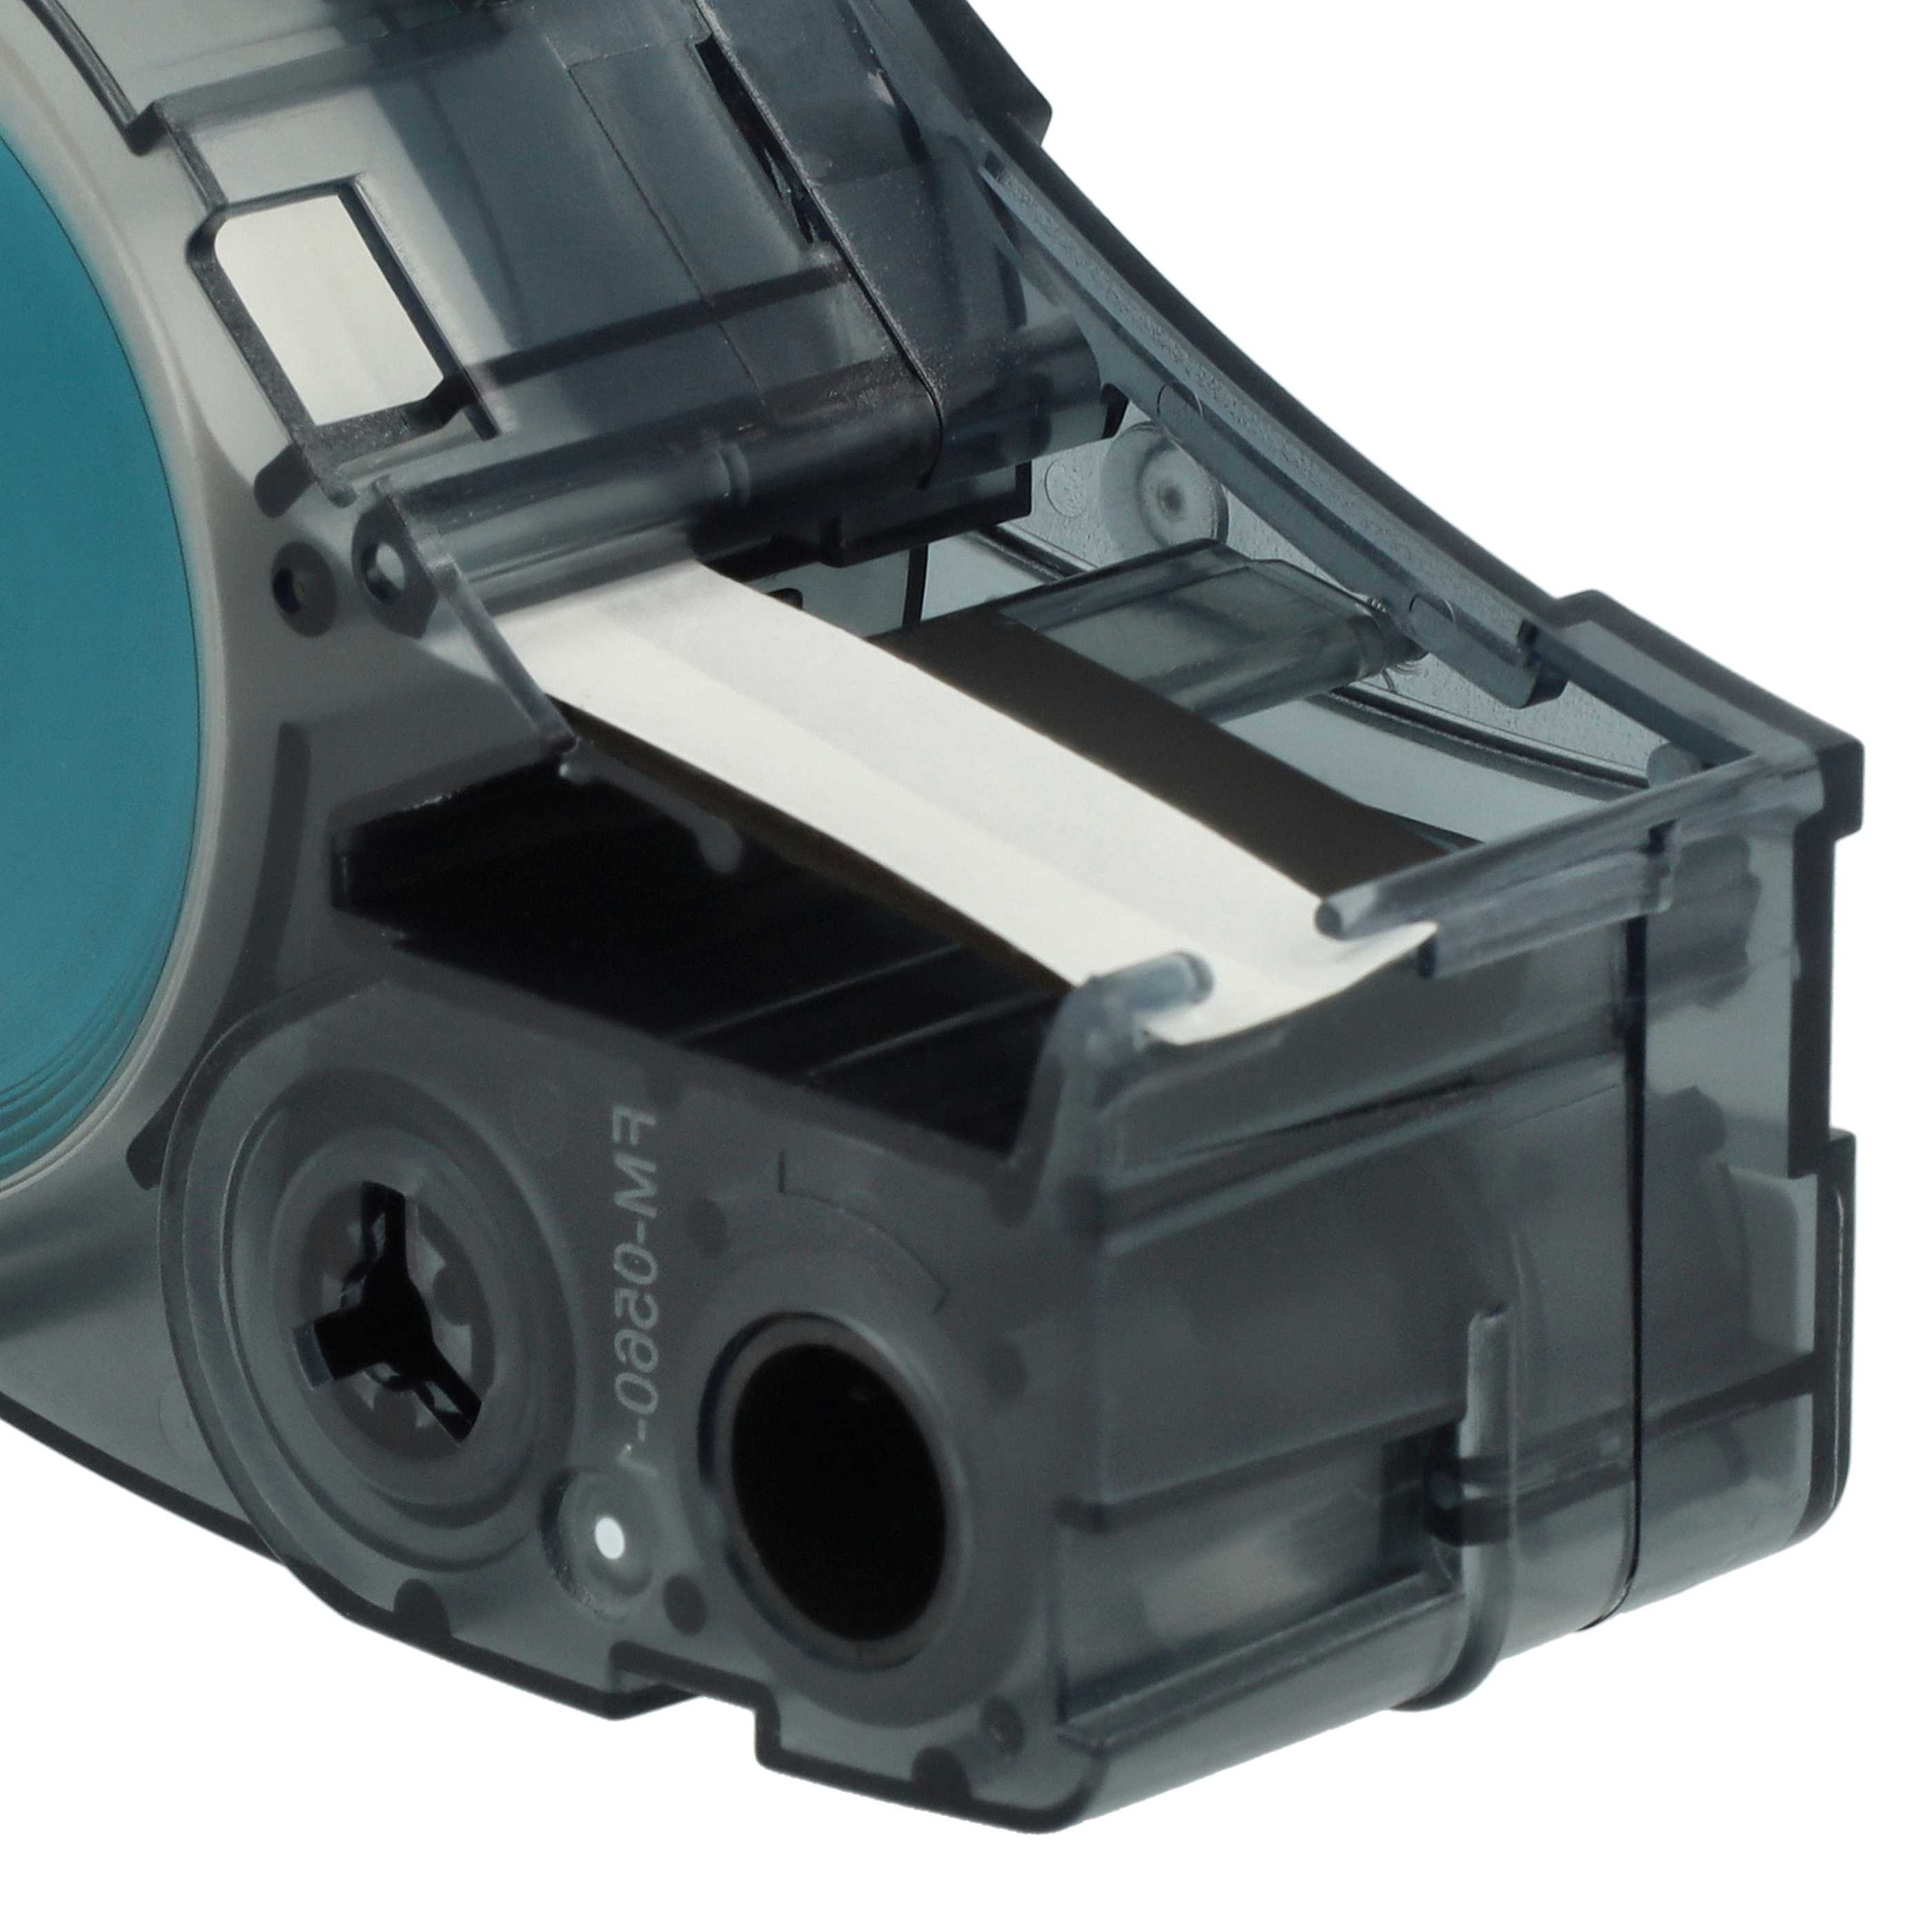 Cassetta nastro sostituisce Brady M21-250-595-WT per etichettatrice Brady 6,35mm nero su bianco, vinile